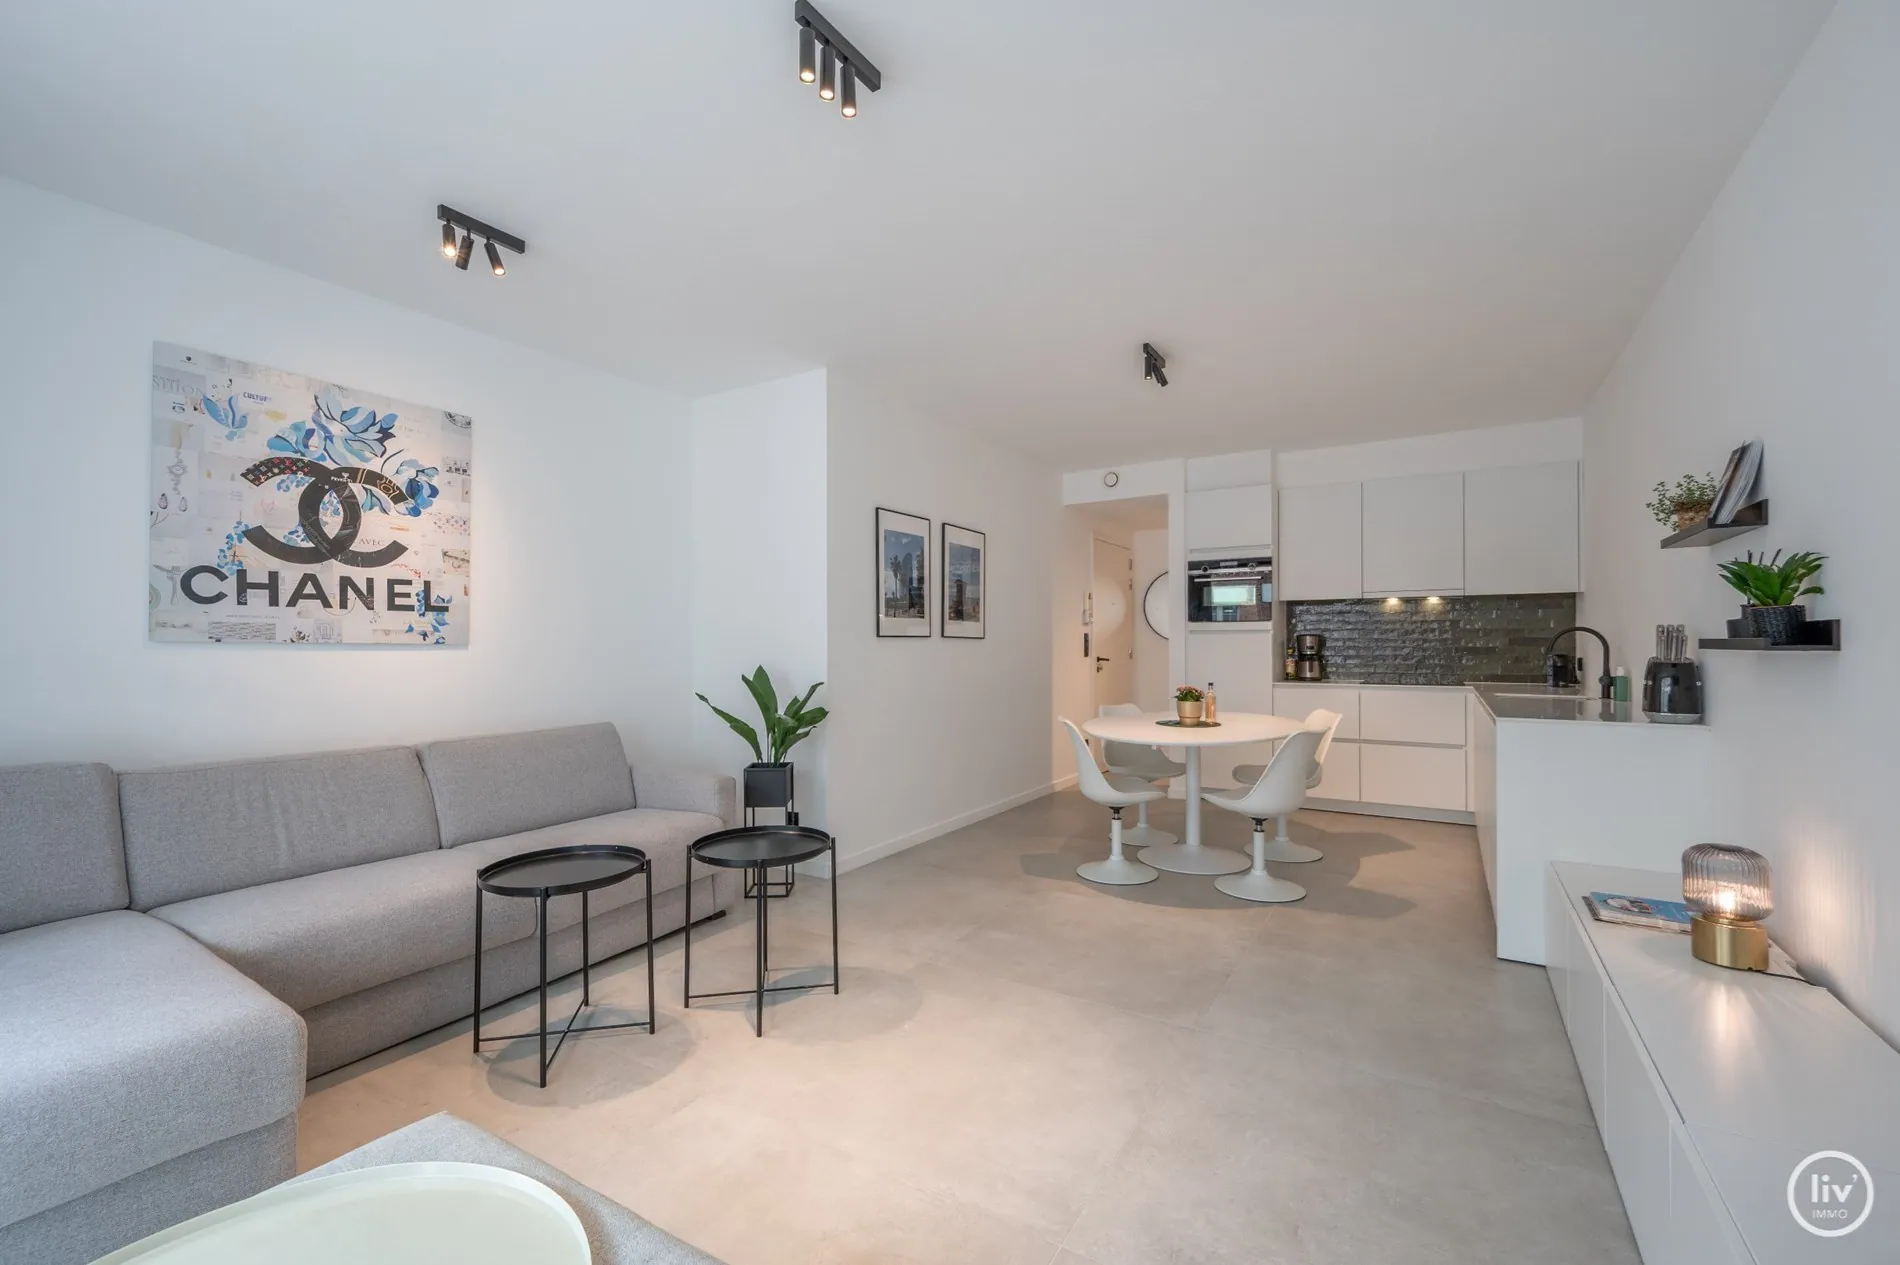 Récent (2020) appartement de 2 chambres dans une résidence moderne avec une grande terrasse ensoleillée à 20m à pied de la Lippenslaan.